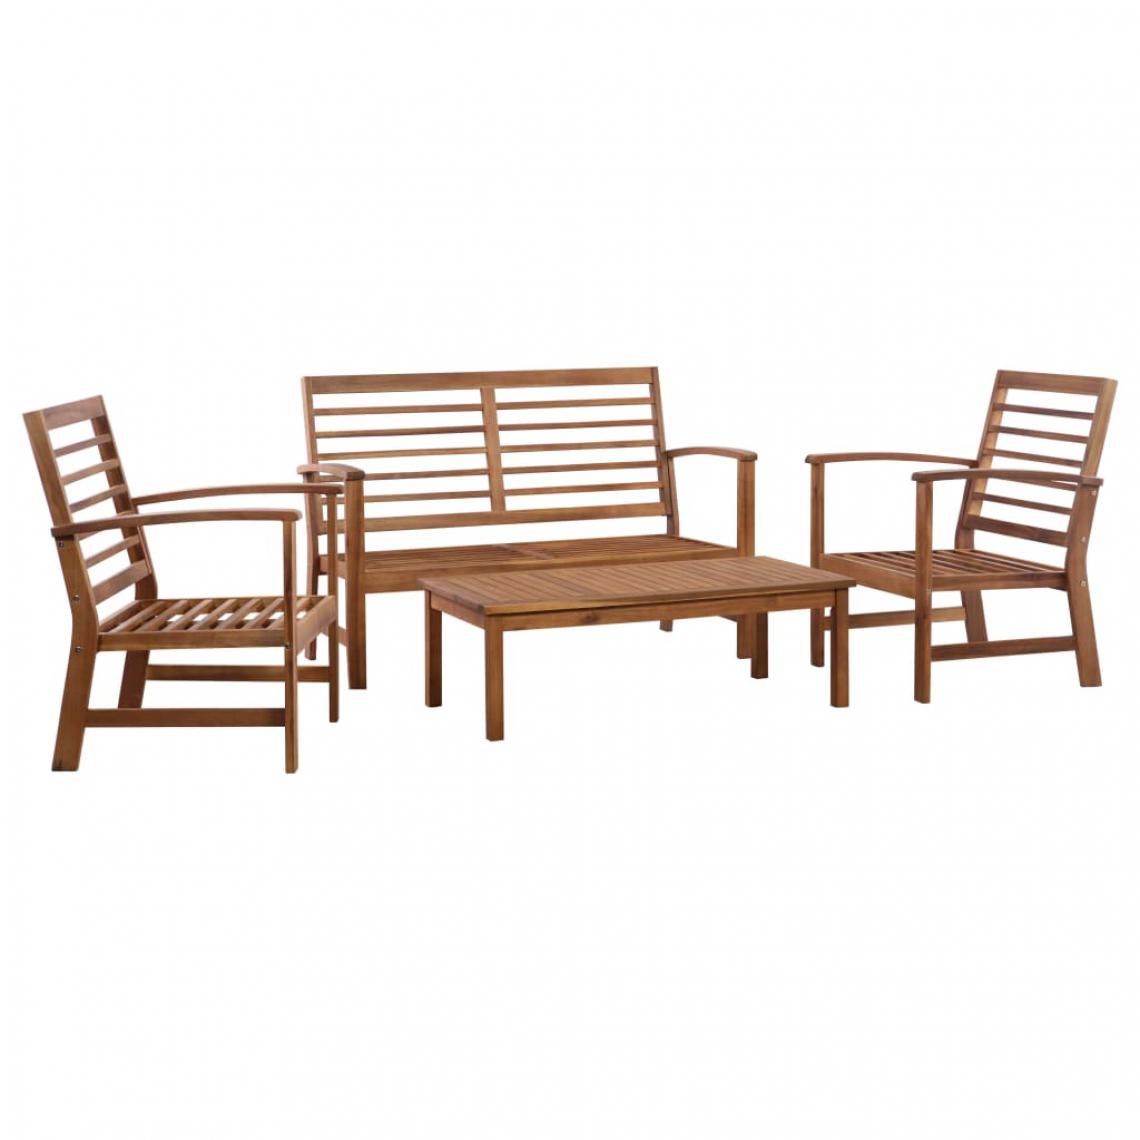 Chunhelife - Tables et chaises Salon de jardin 4 pcs Bois d'acacia solide - Ensembles tables et chaises